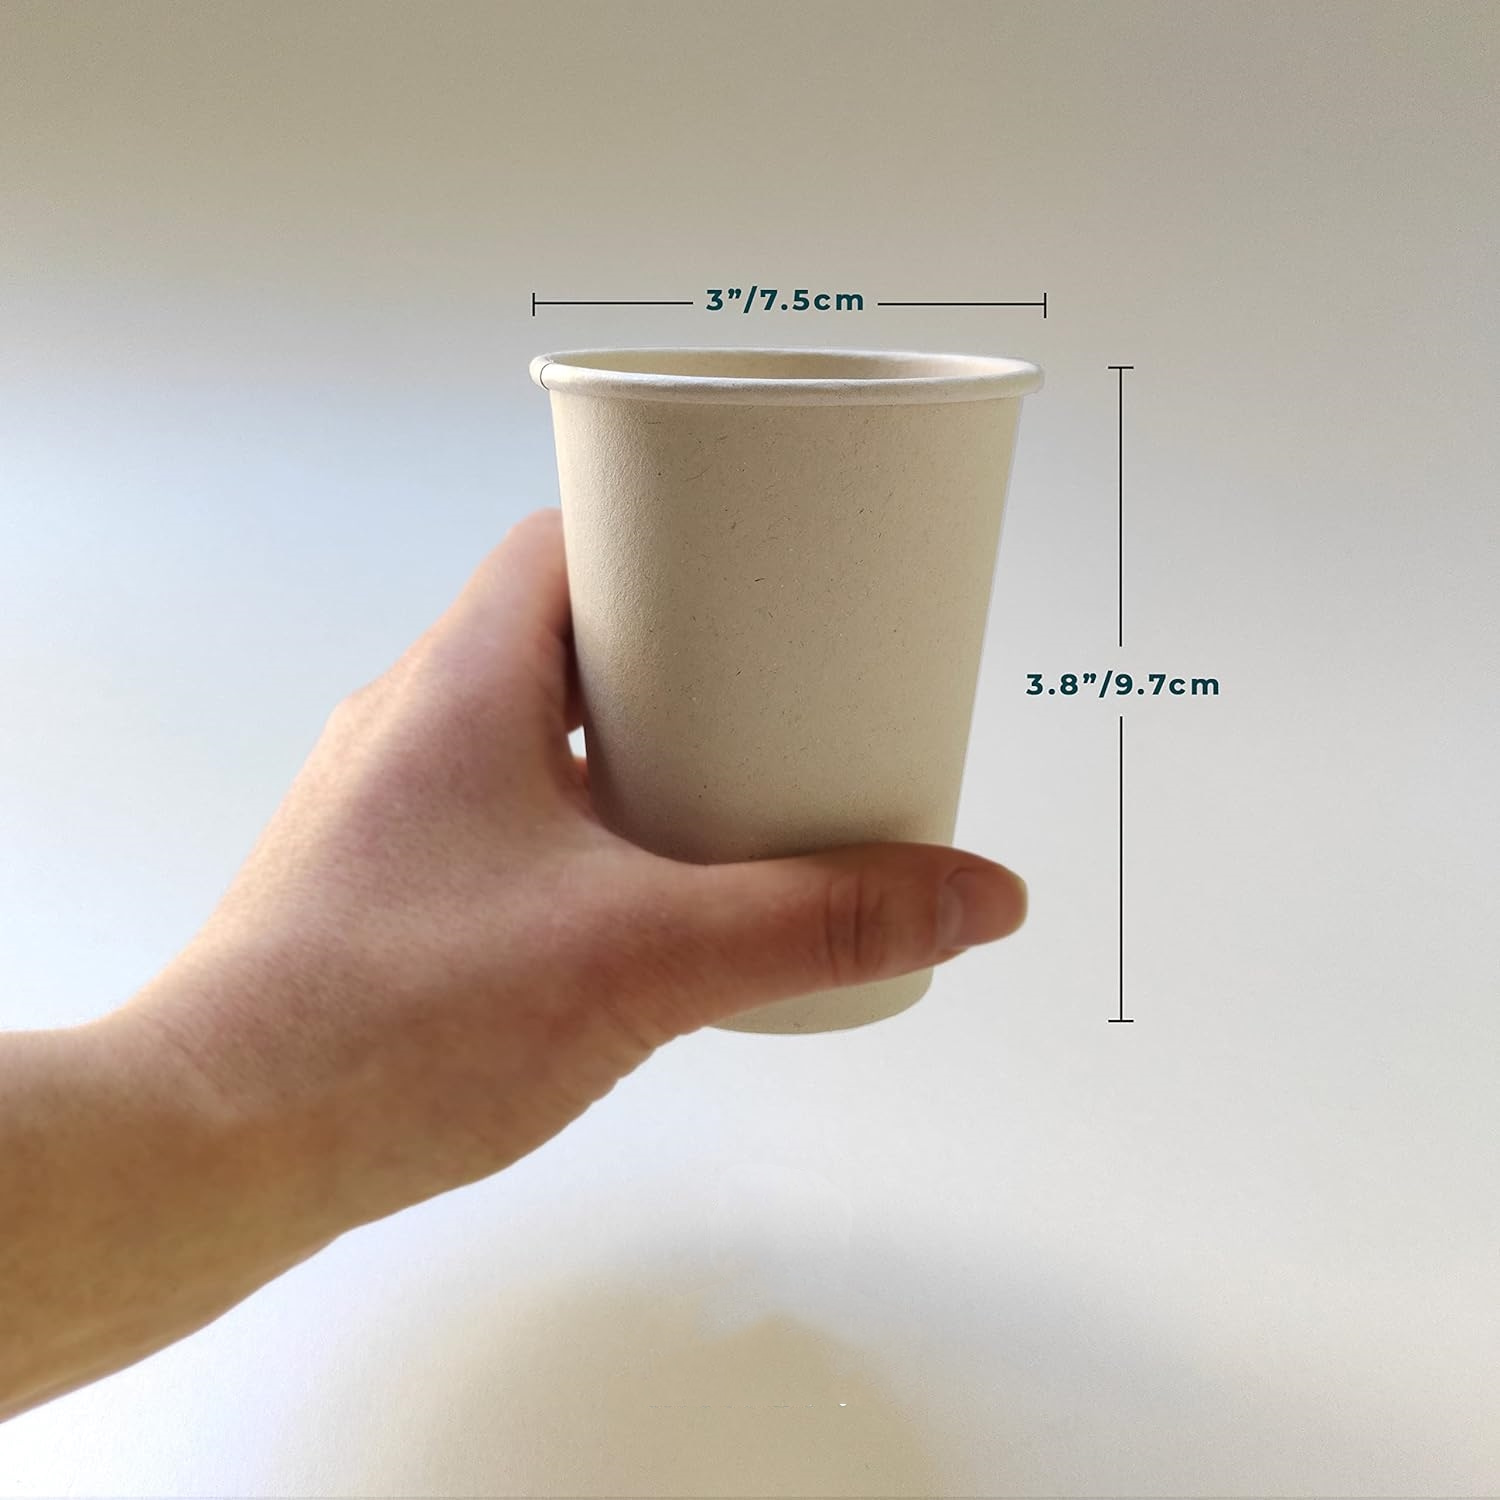 可持续一次性 9 盎司饮用咖啡杯环保优质派对杯天然甘蔗渣纤维坚固的热饮或冷饮杯